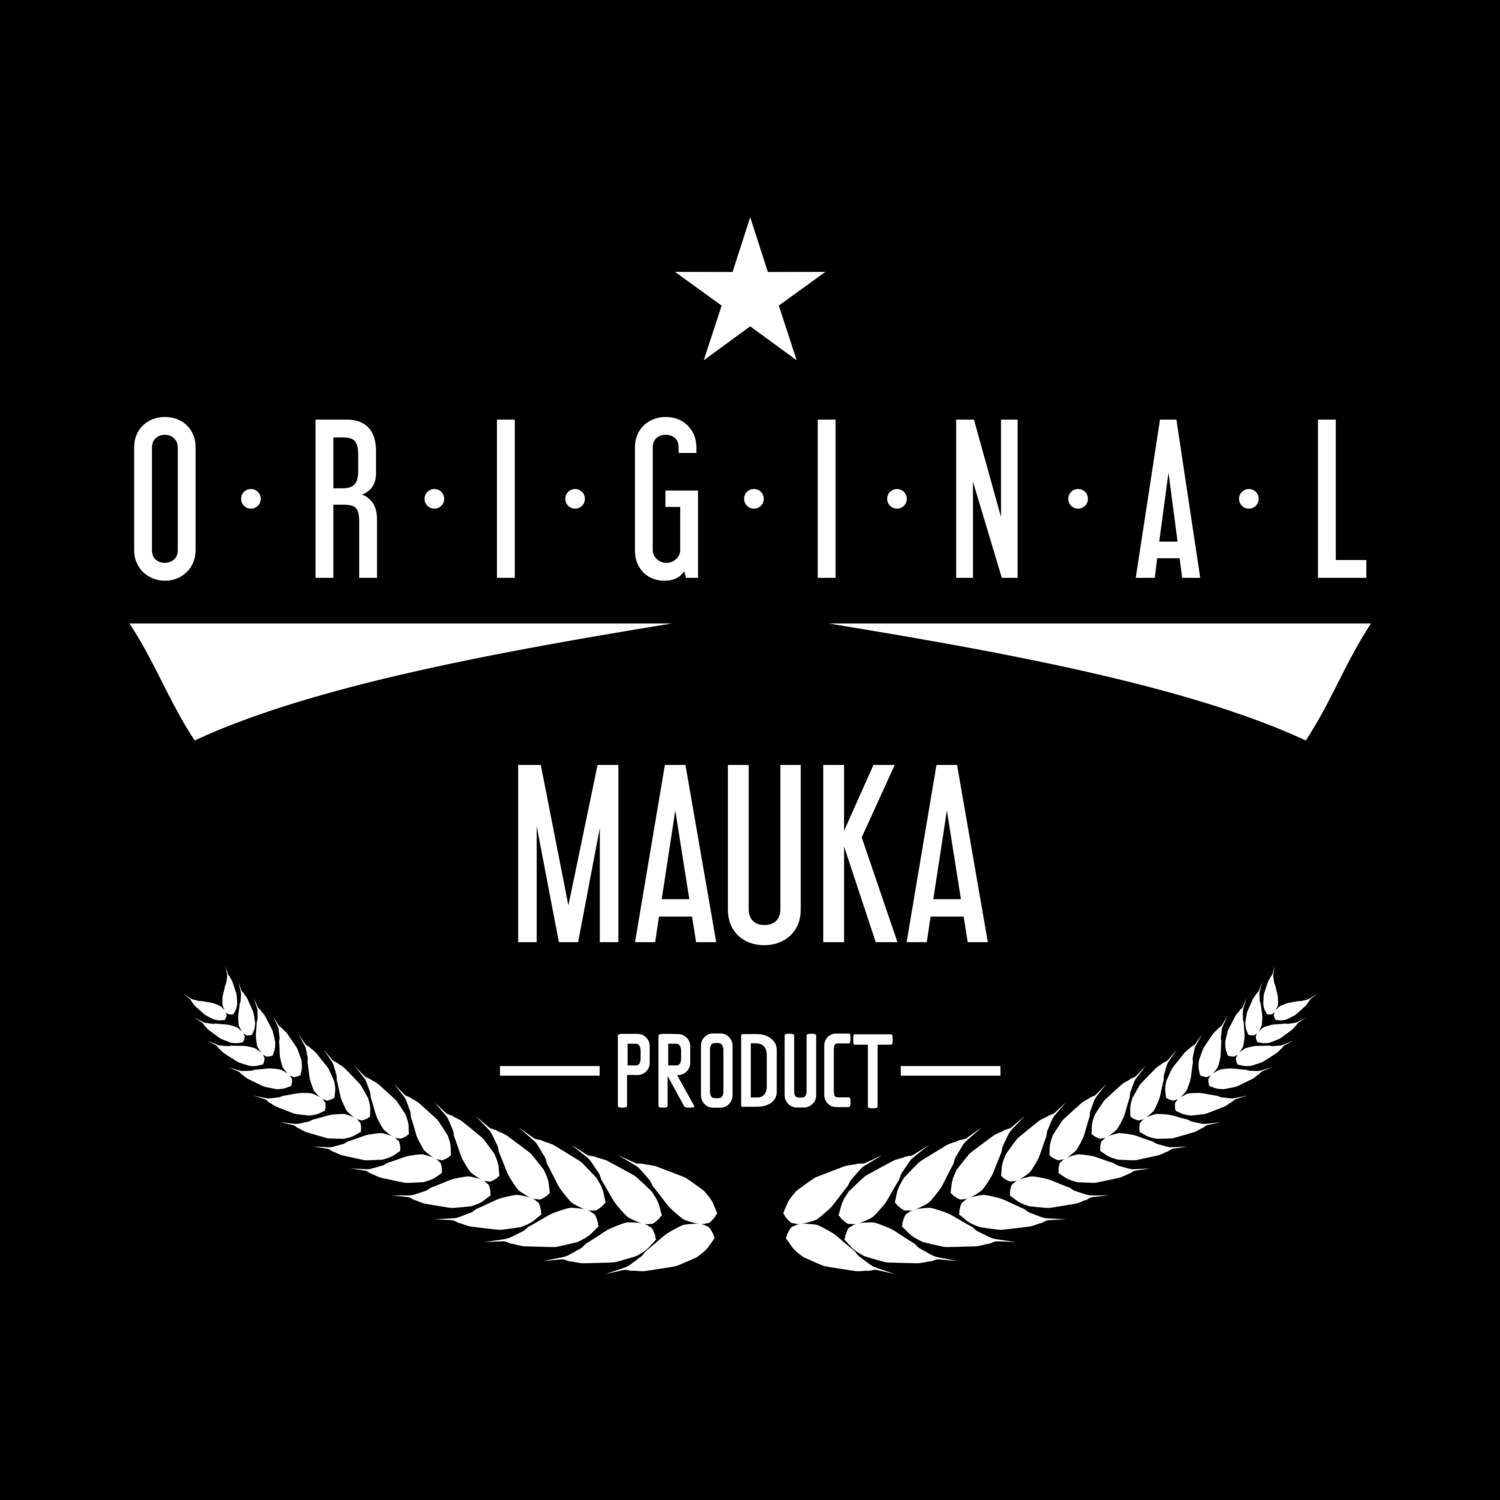 Mauka T-Shirt »Original Product«